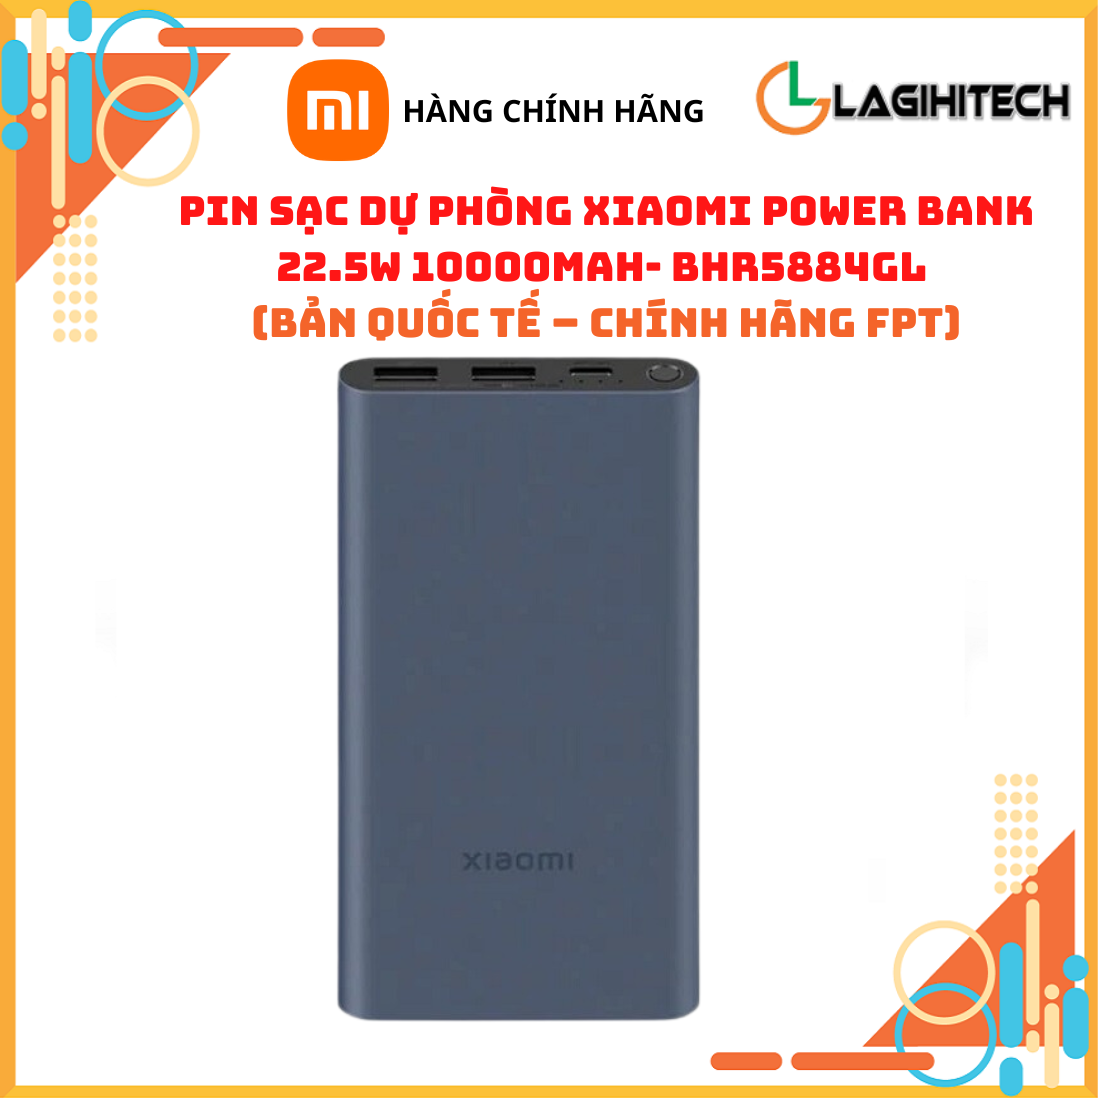 Pin Sạc Dự Phòng Xiaomi Power Bank Pocket Edition Pro 33W 10000mAh / 22.5W 10000mAh Bản Quốc Tế – Hàng Chính Hãng FPT